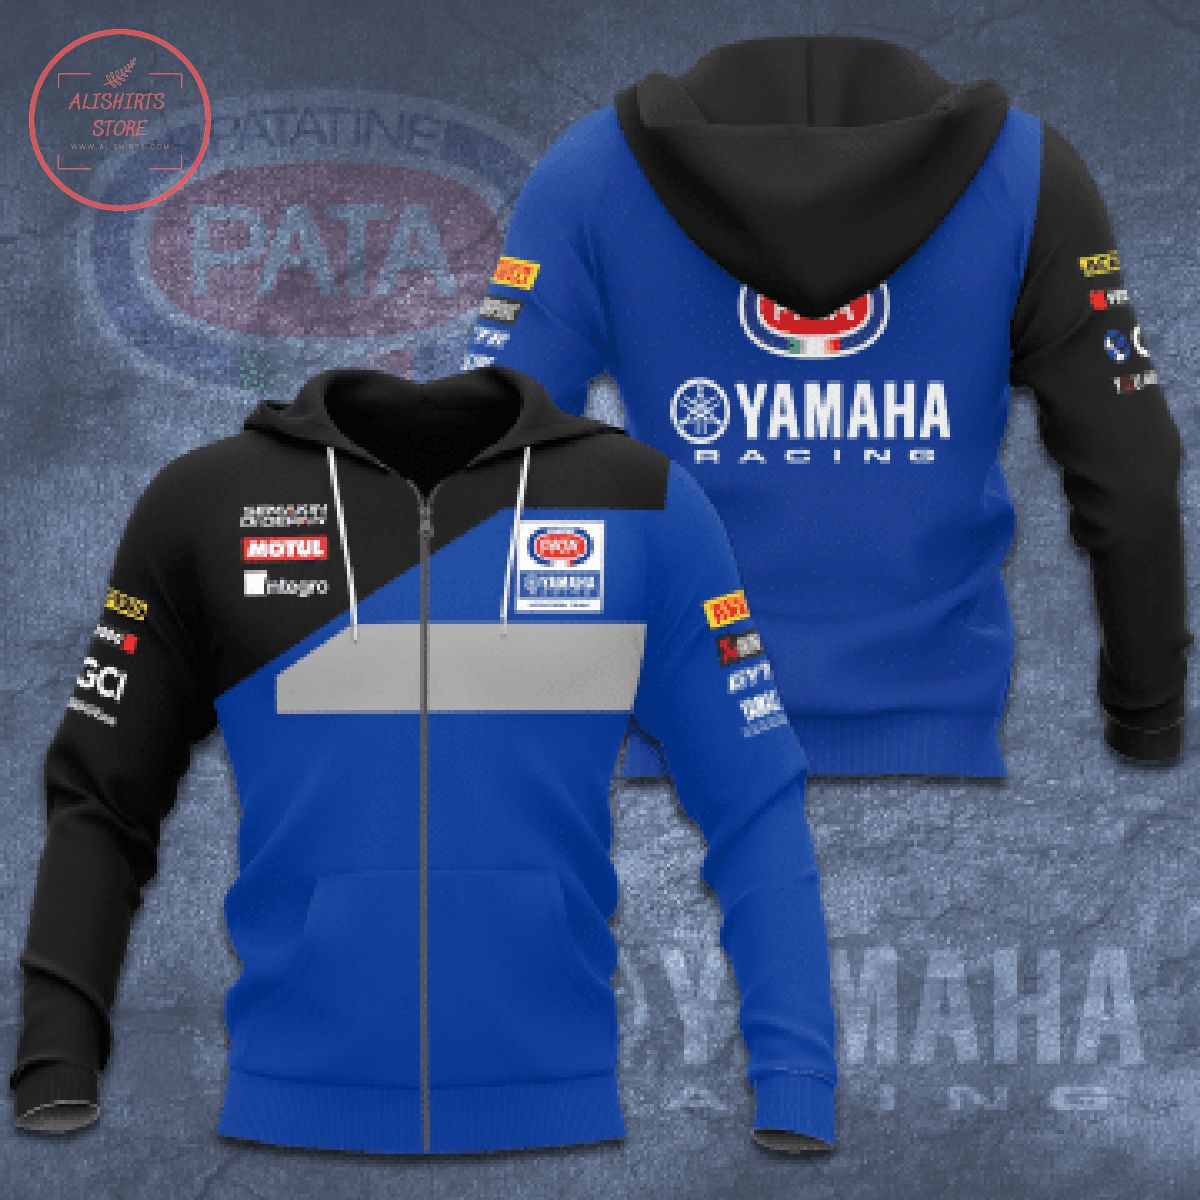 Snack Pata Yamaha Racing All Over Printed Shirts